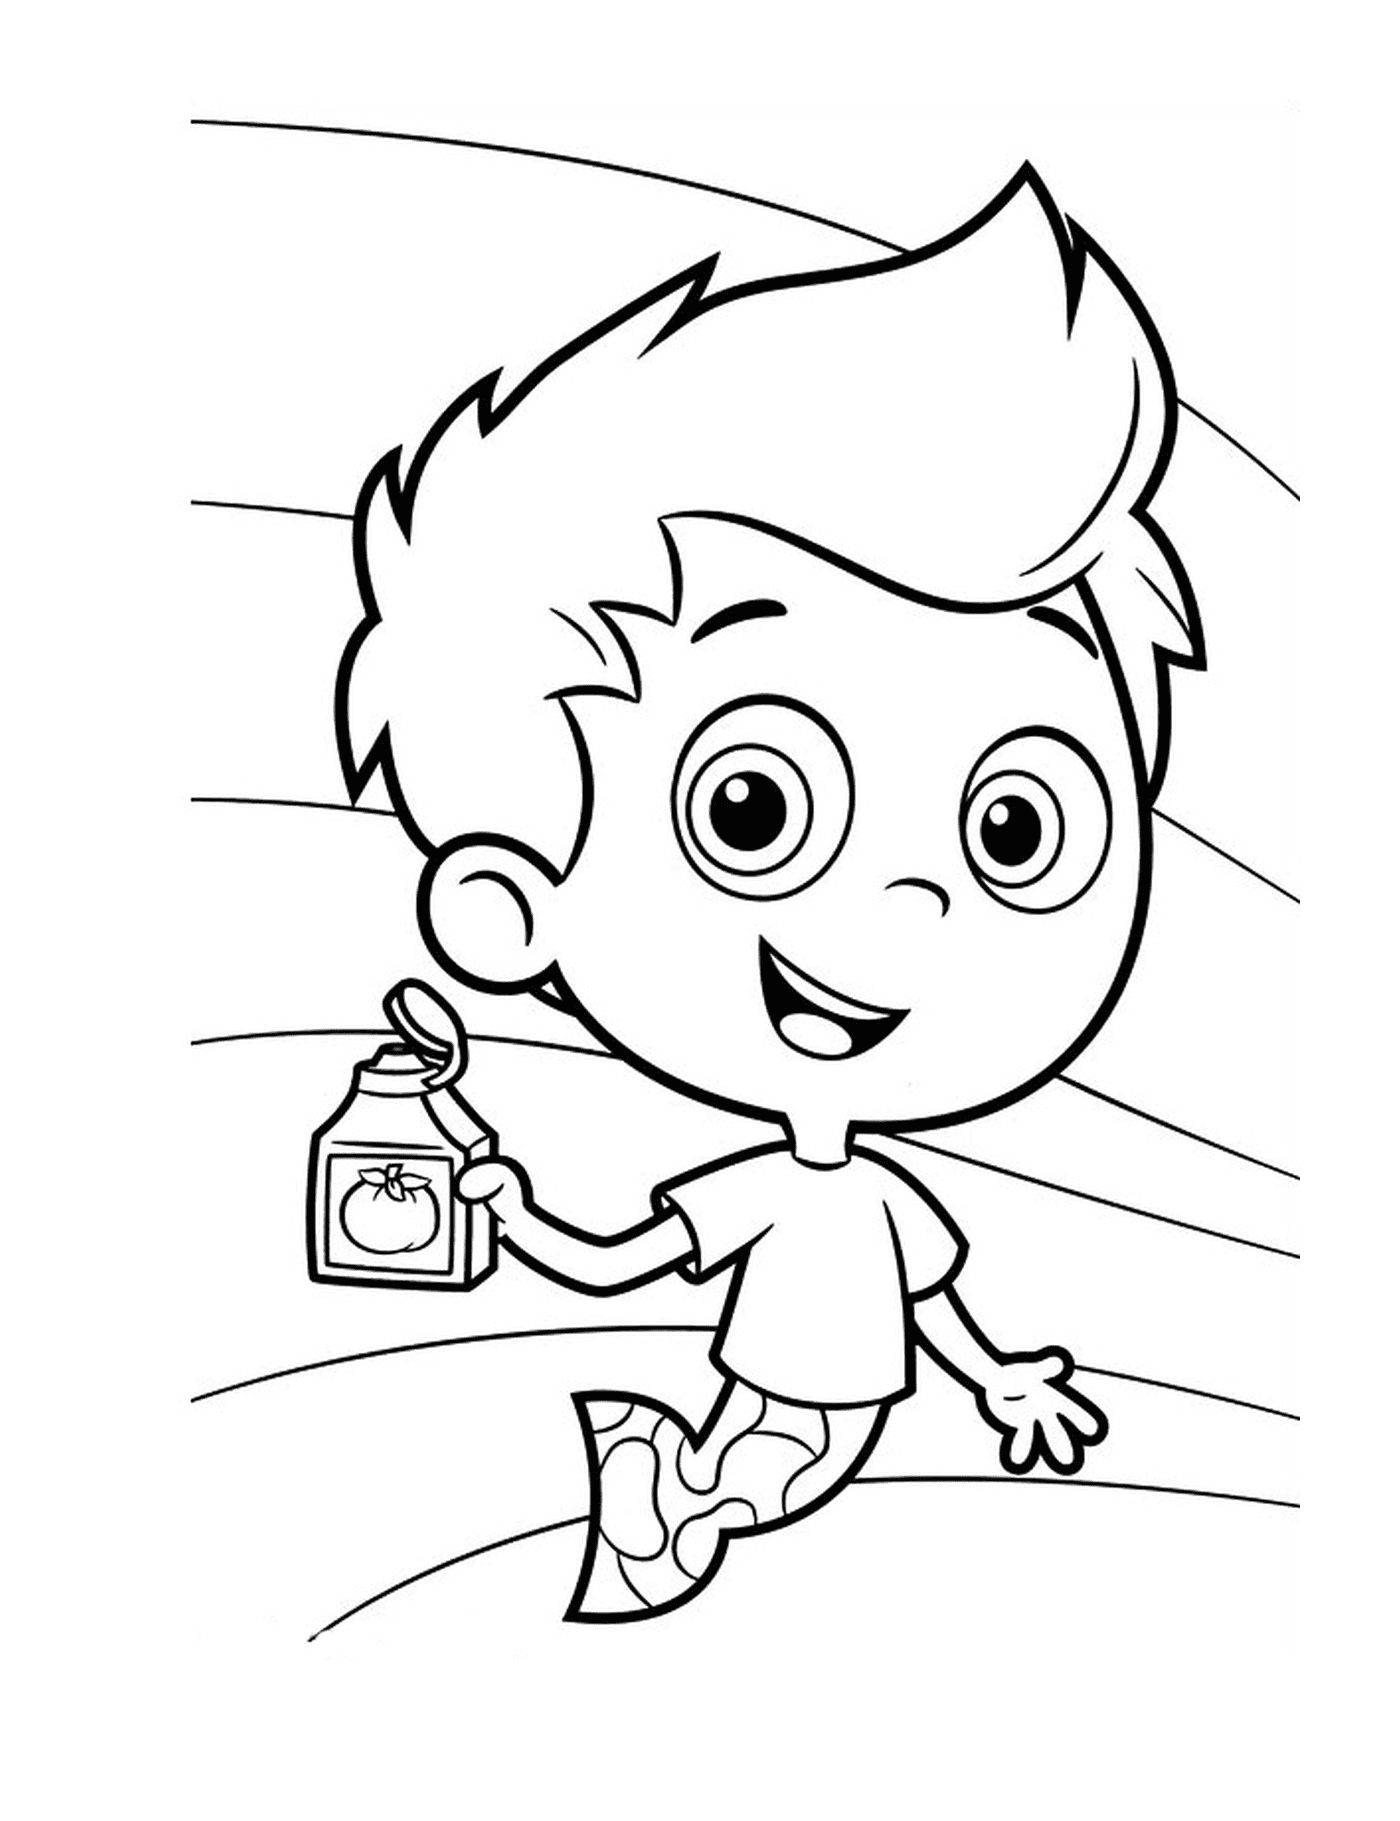  A boy holding a bottle of tomato juice 